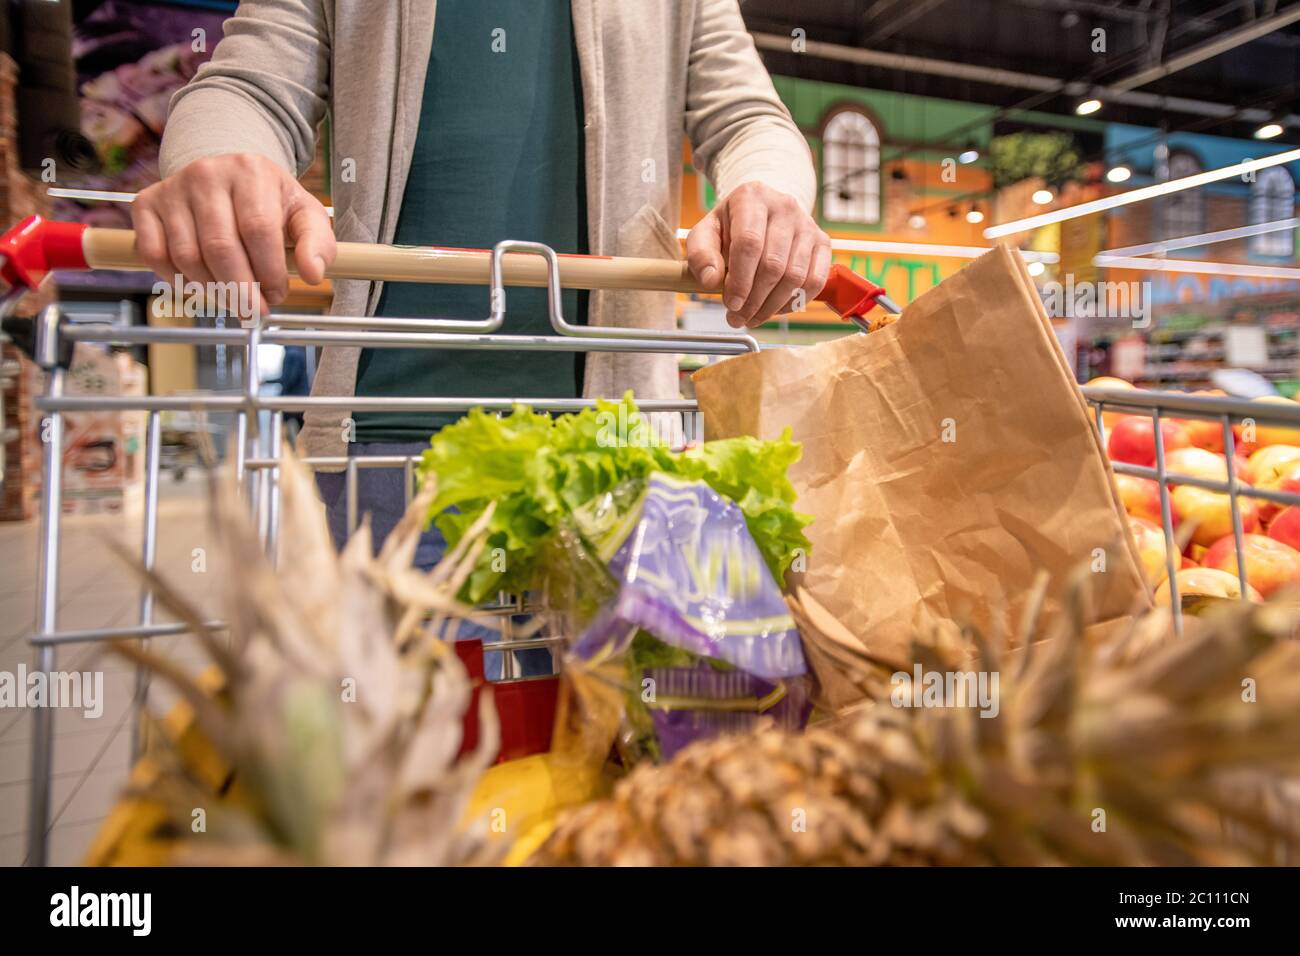 Hände von modernen reifen männlichen Kunden schieben Wagen mit frischem Obst und Gemüse, während Sie Supermarkt zu kaufen Lebensmittel Stockfoto